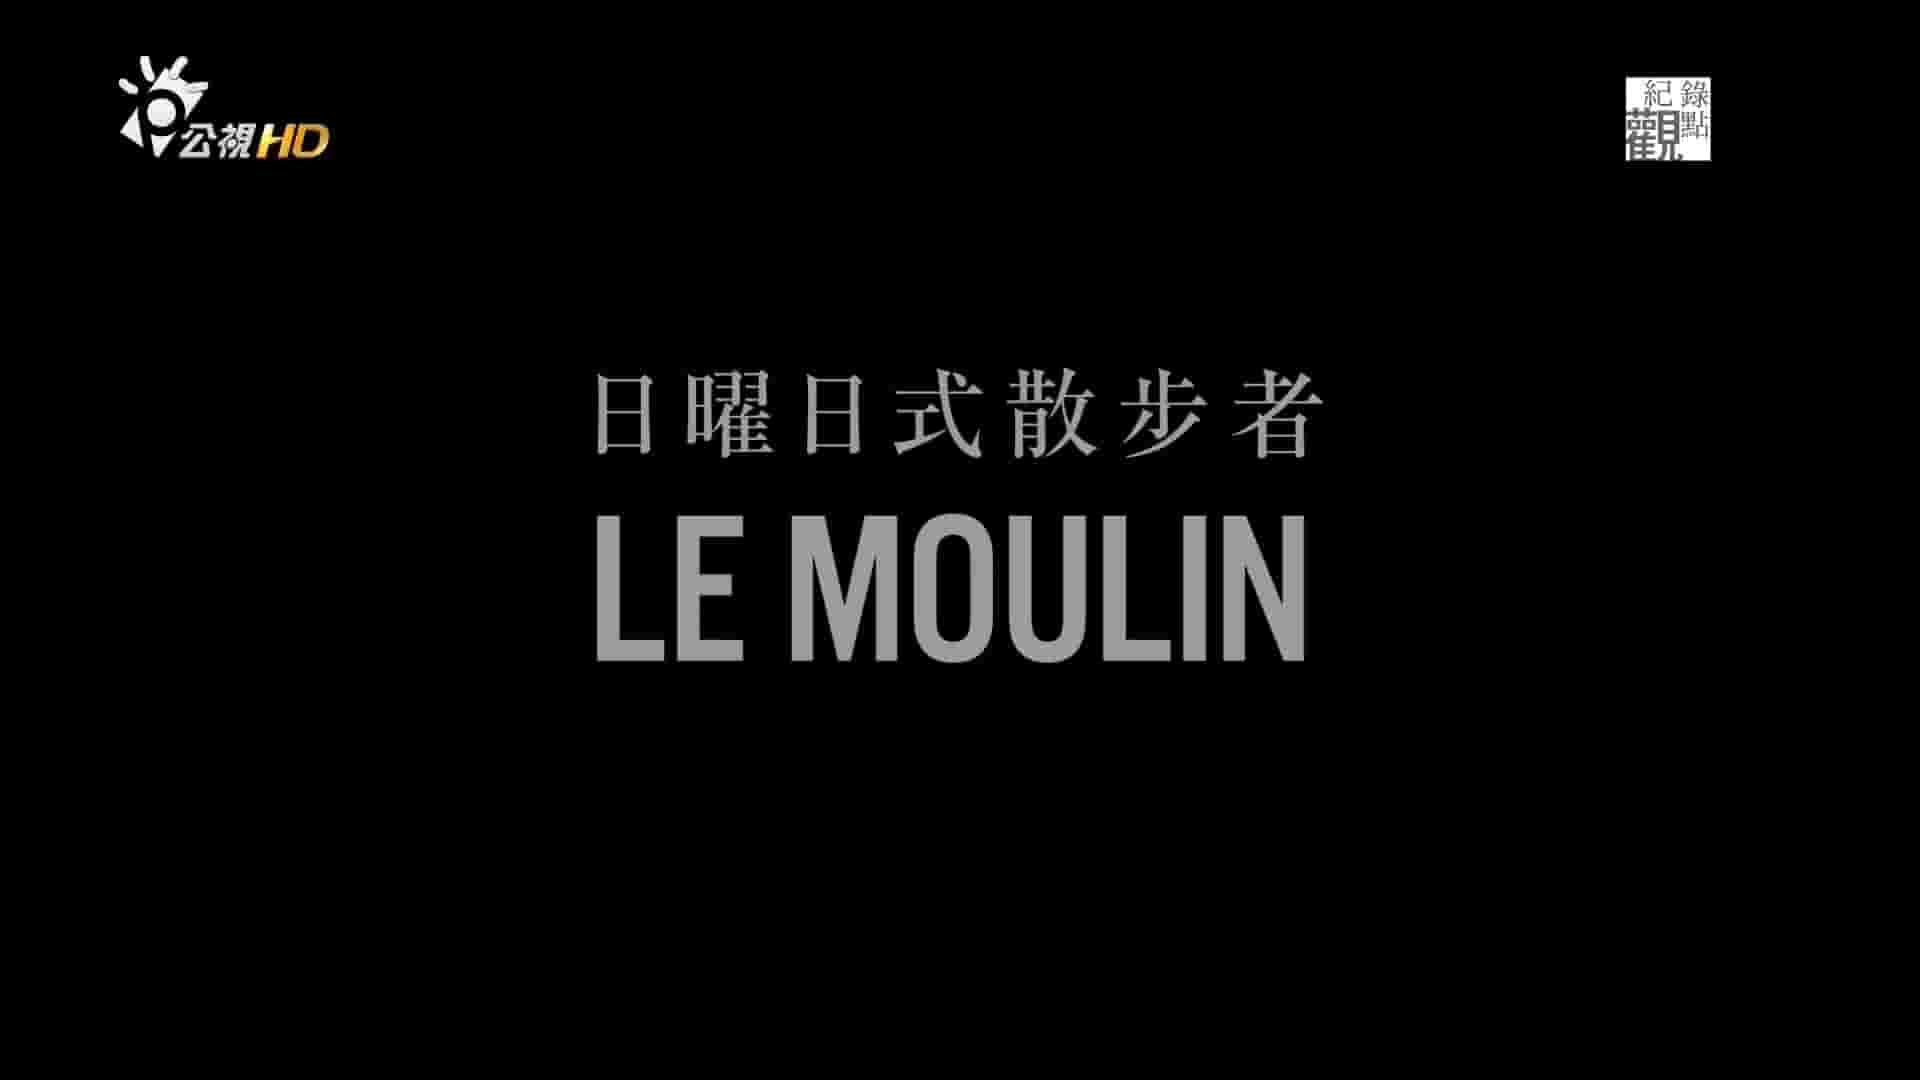 台湾纪录片《日曜日式散步者 Le Moulin 2015》全1集 日语汉语内嵌中字  1080P高清网盘下载